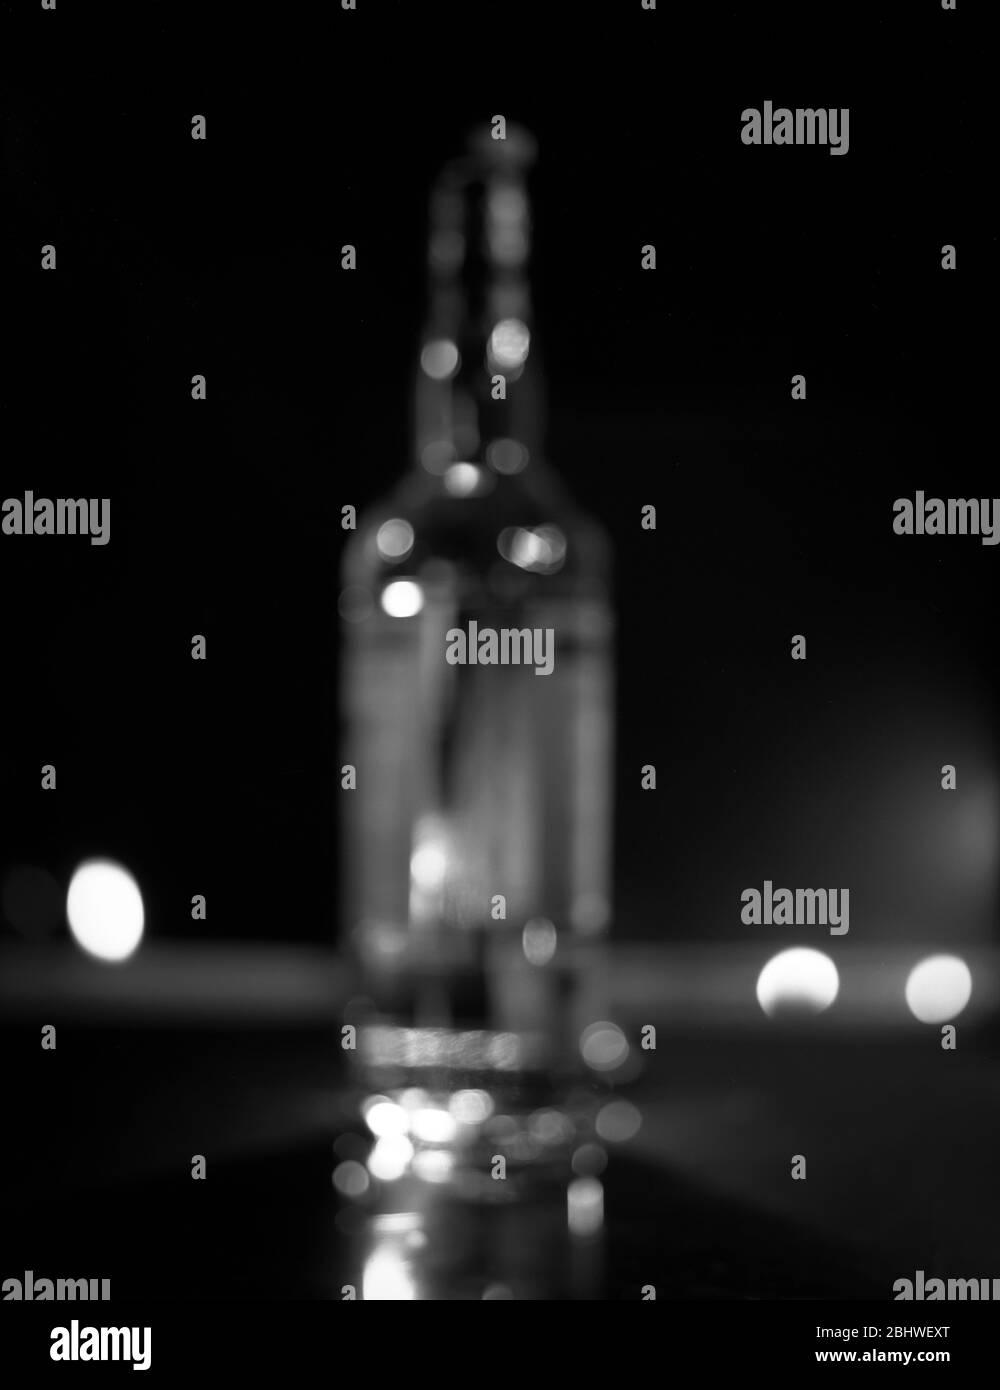 Bottle of Glenmorangie - blurred image Stock Photo